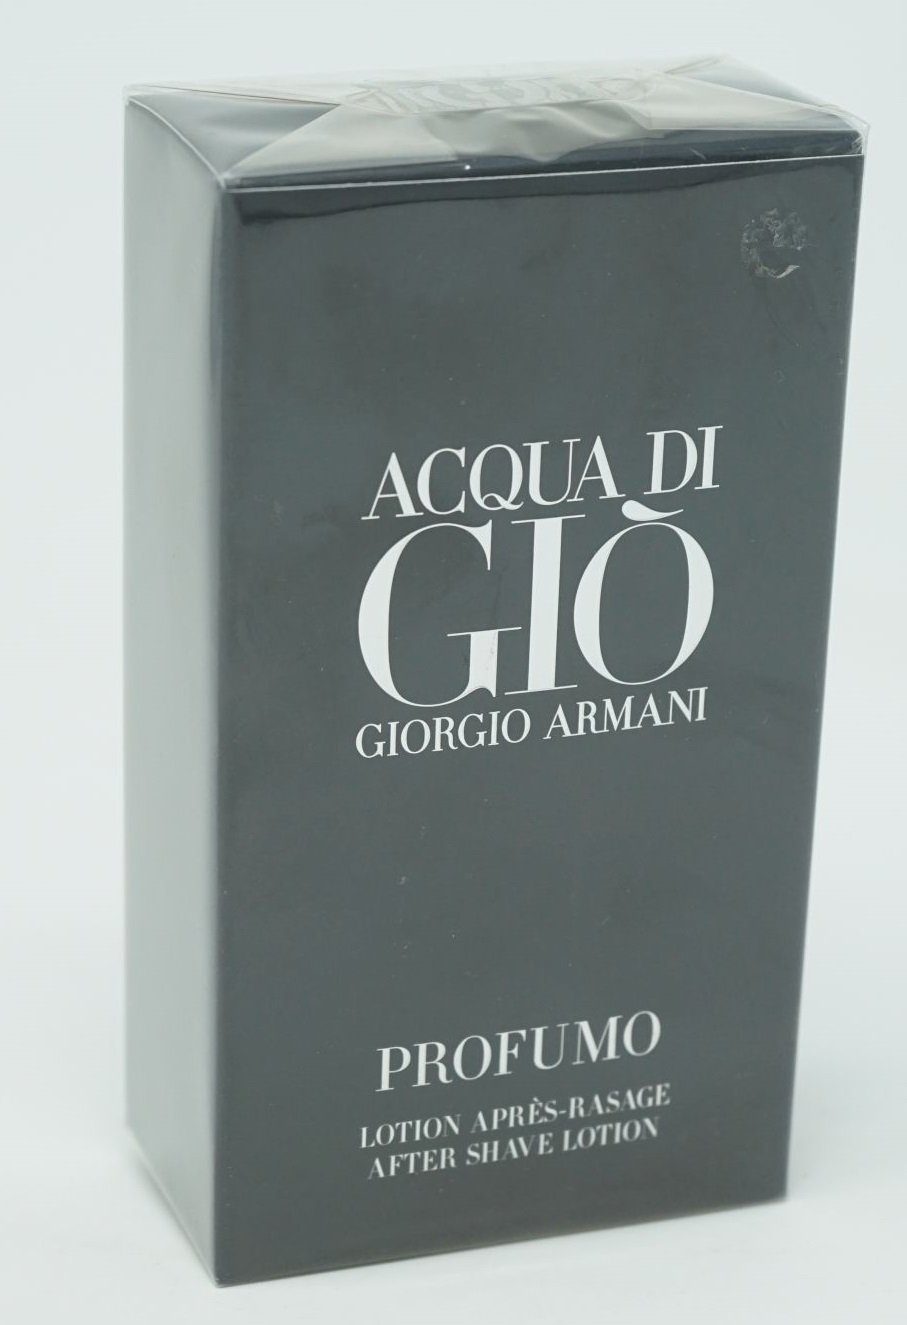 Giorgio Armani Eau de Toilette Giorgio Armani Acqua di Gio Profumo After Shave Lotion 100 ml